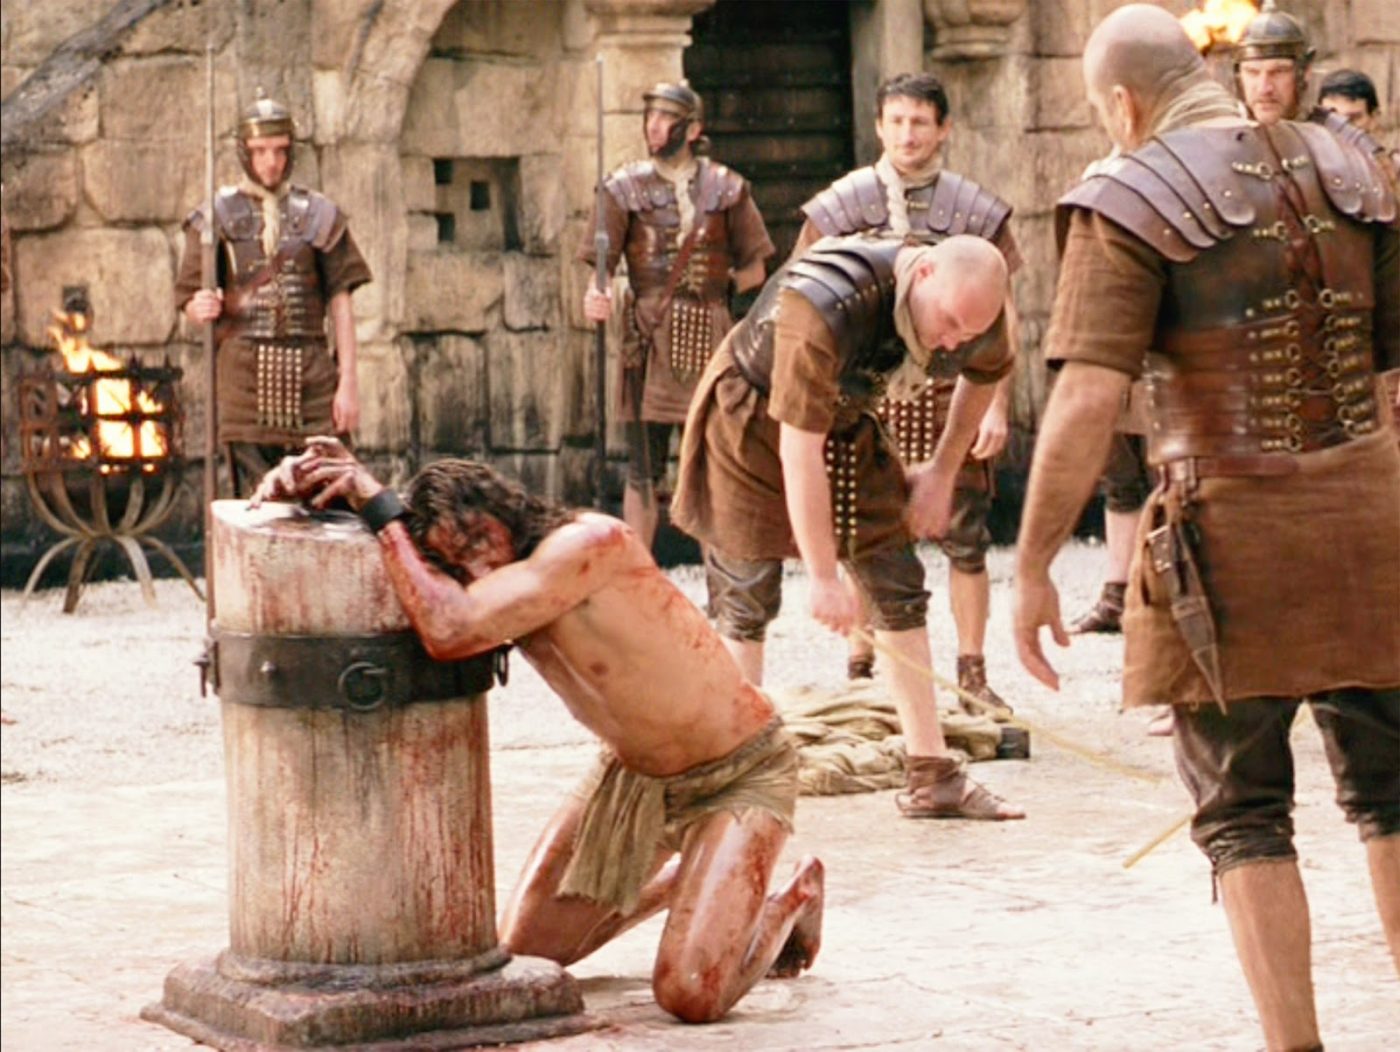 Je li Isus dobio 39 udaraca bičem od Rimljana?